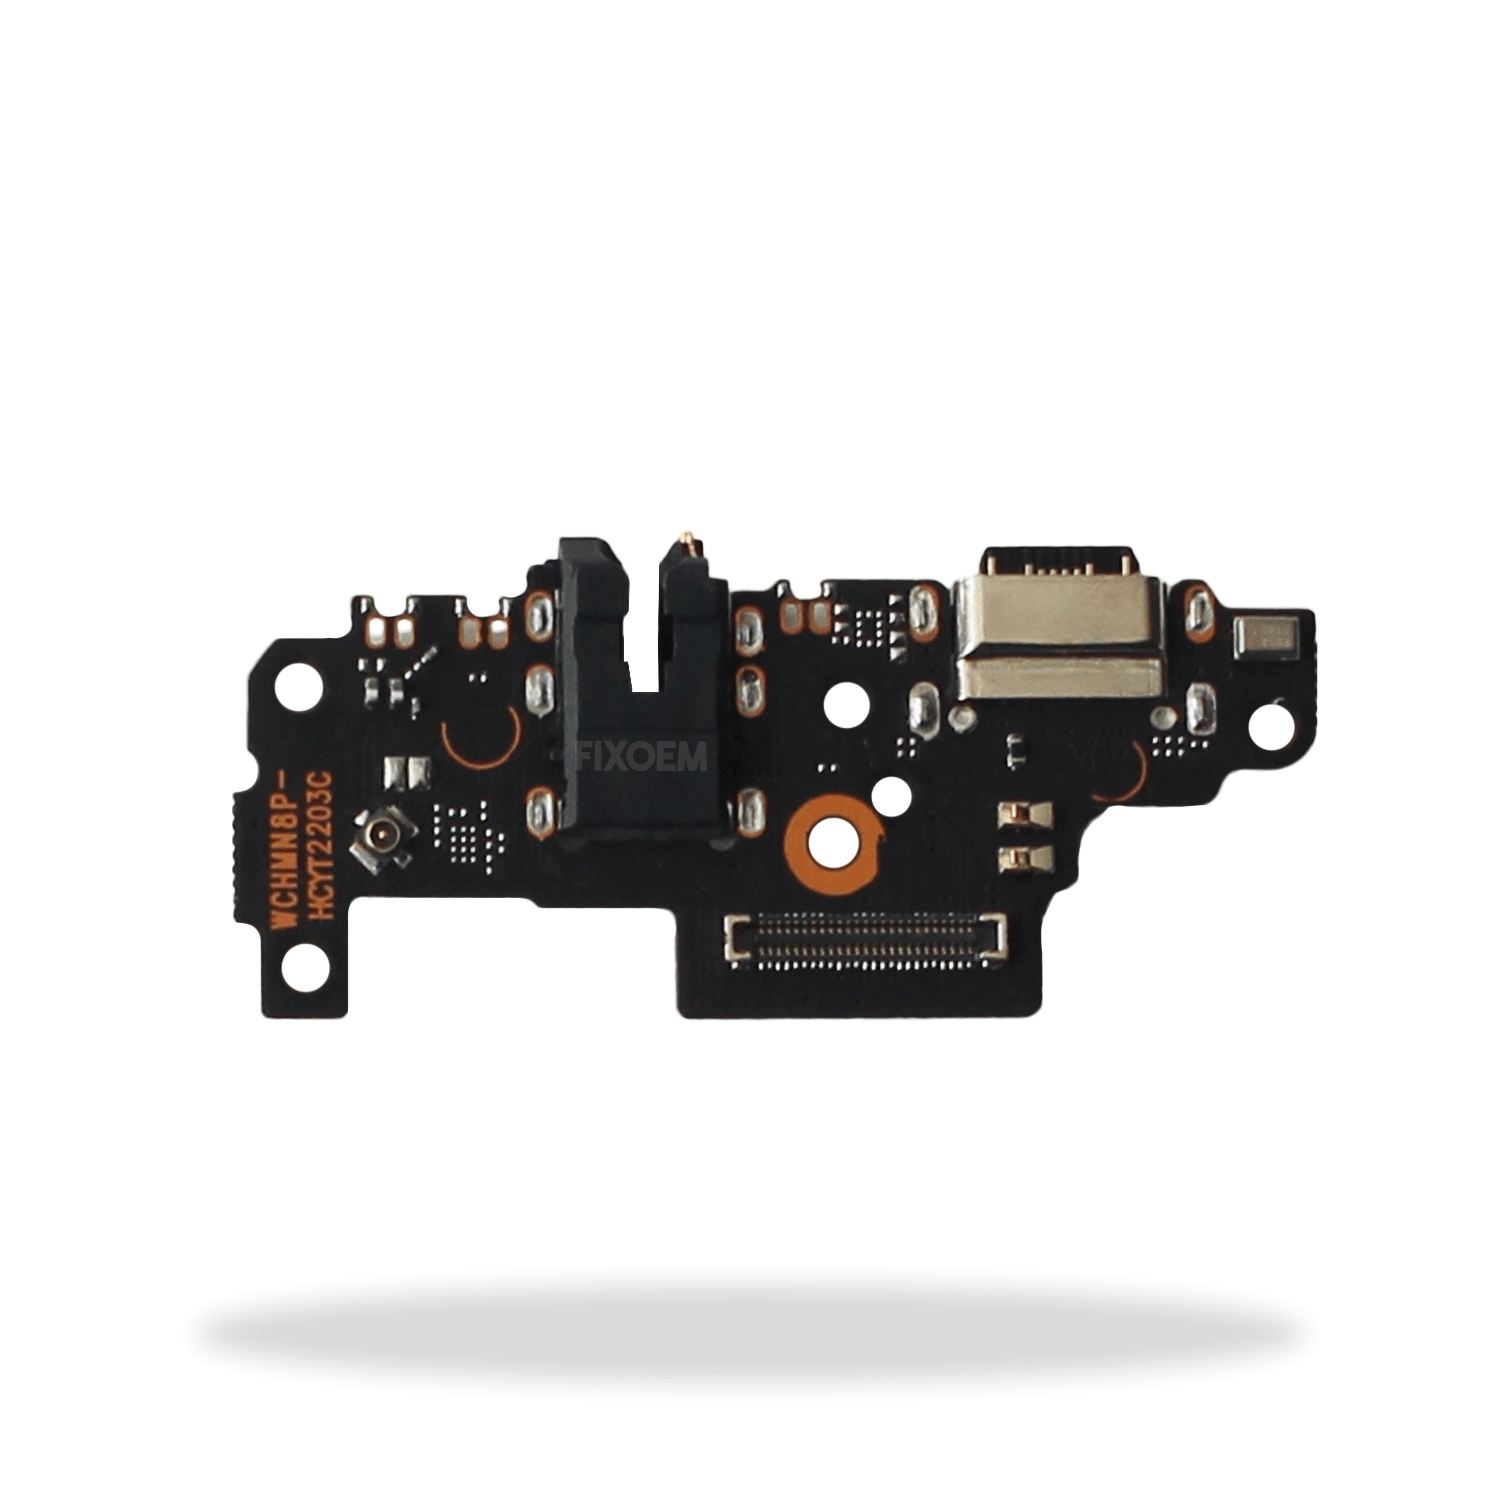 Centro Carga Xiaomi Redmi Note 8 Pro a solo $ 60.00 Refaccion y puestos celulares, refurbish y microelectronica.- FixOEM